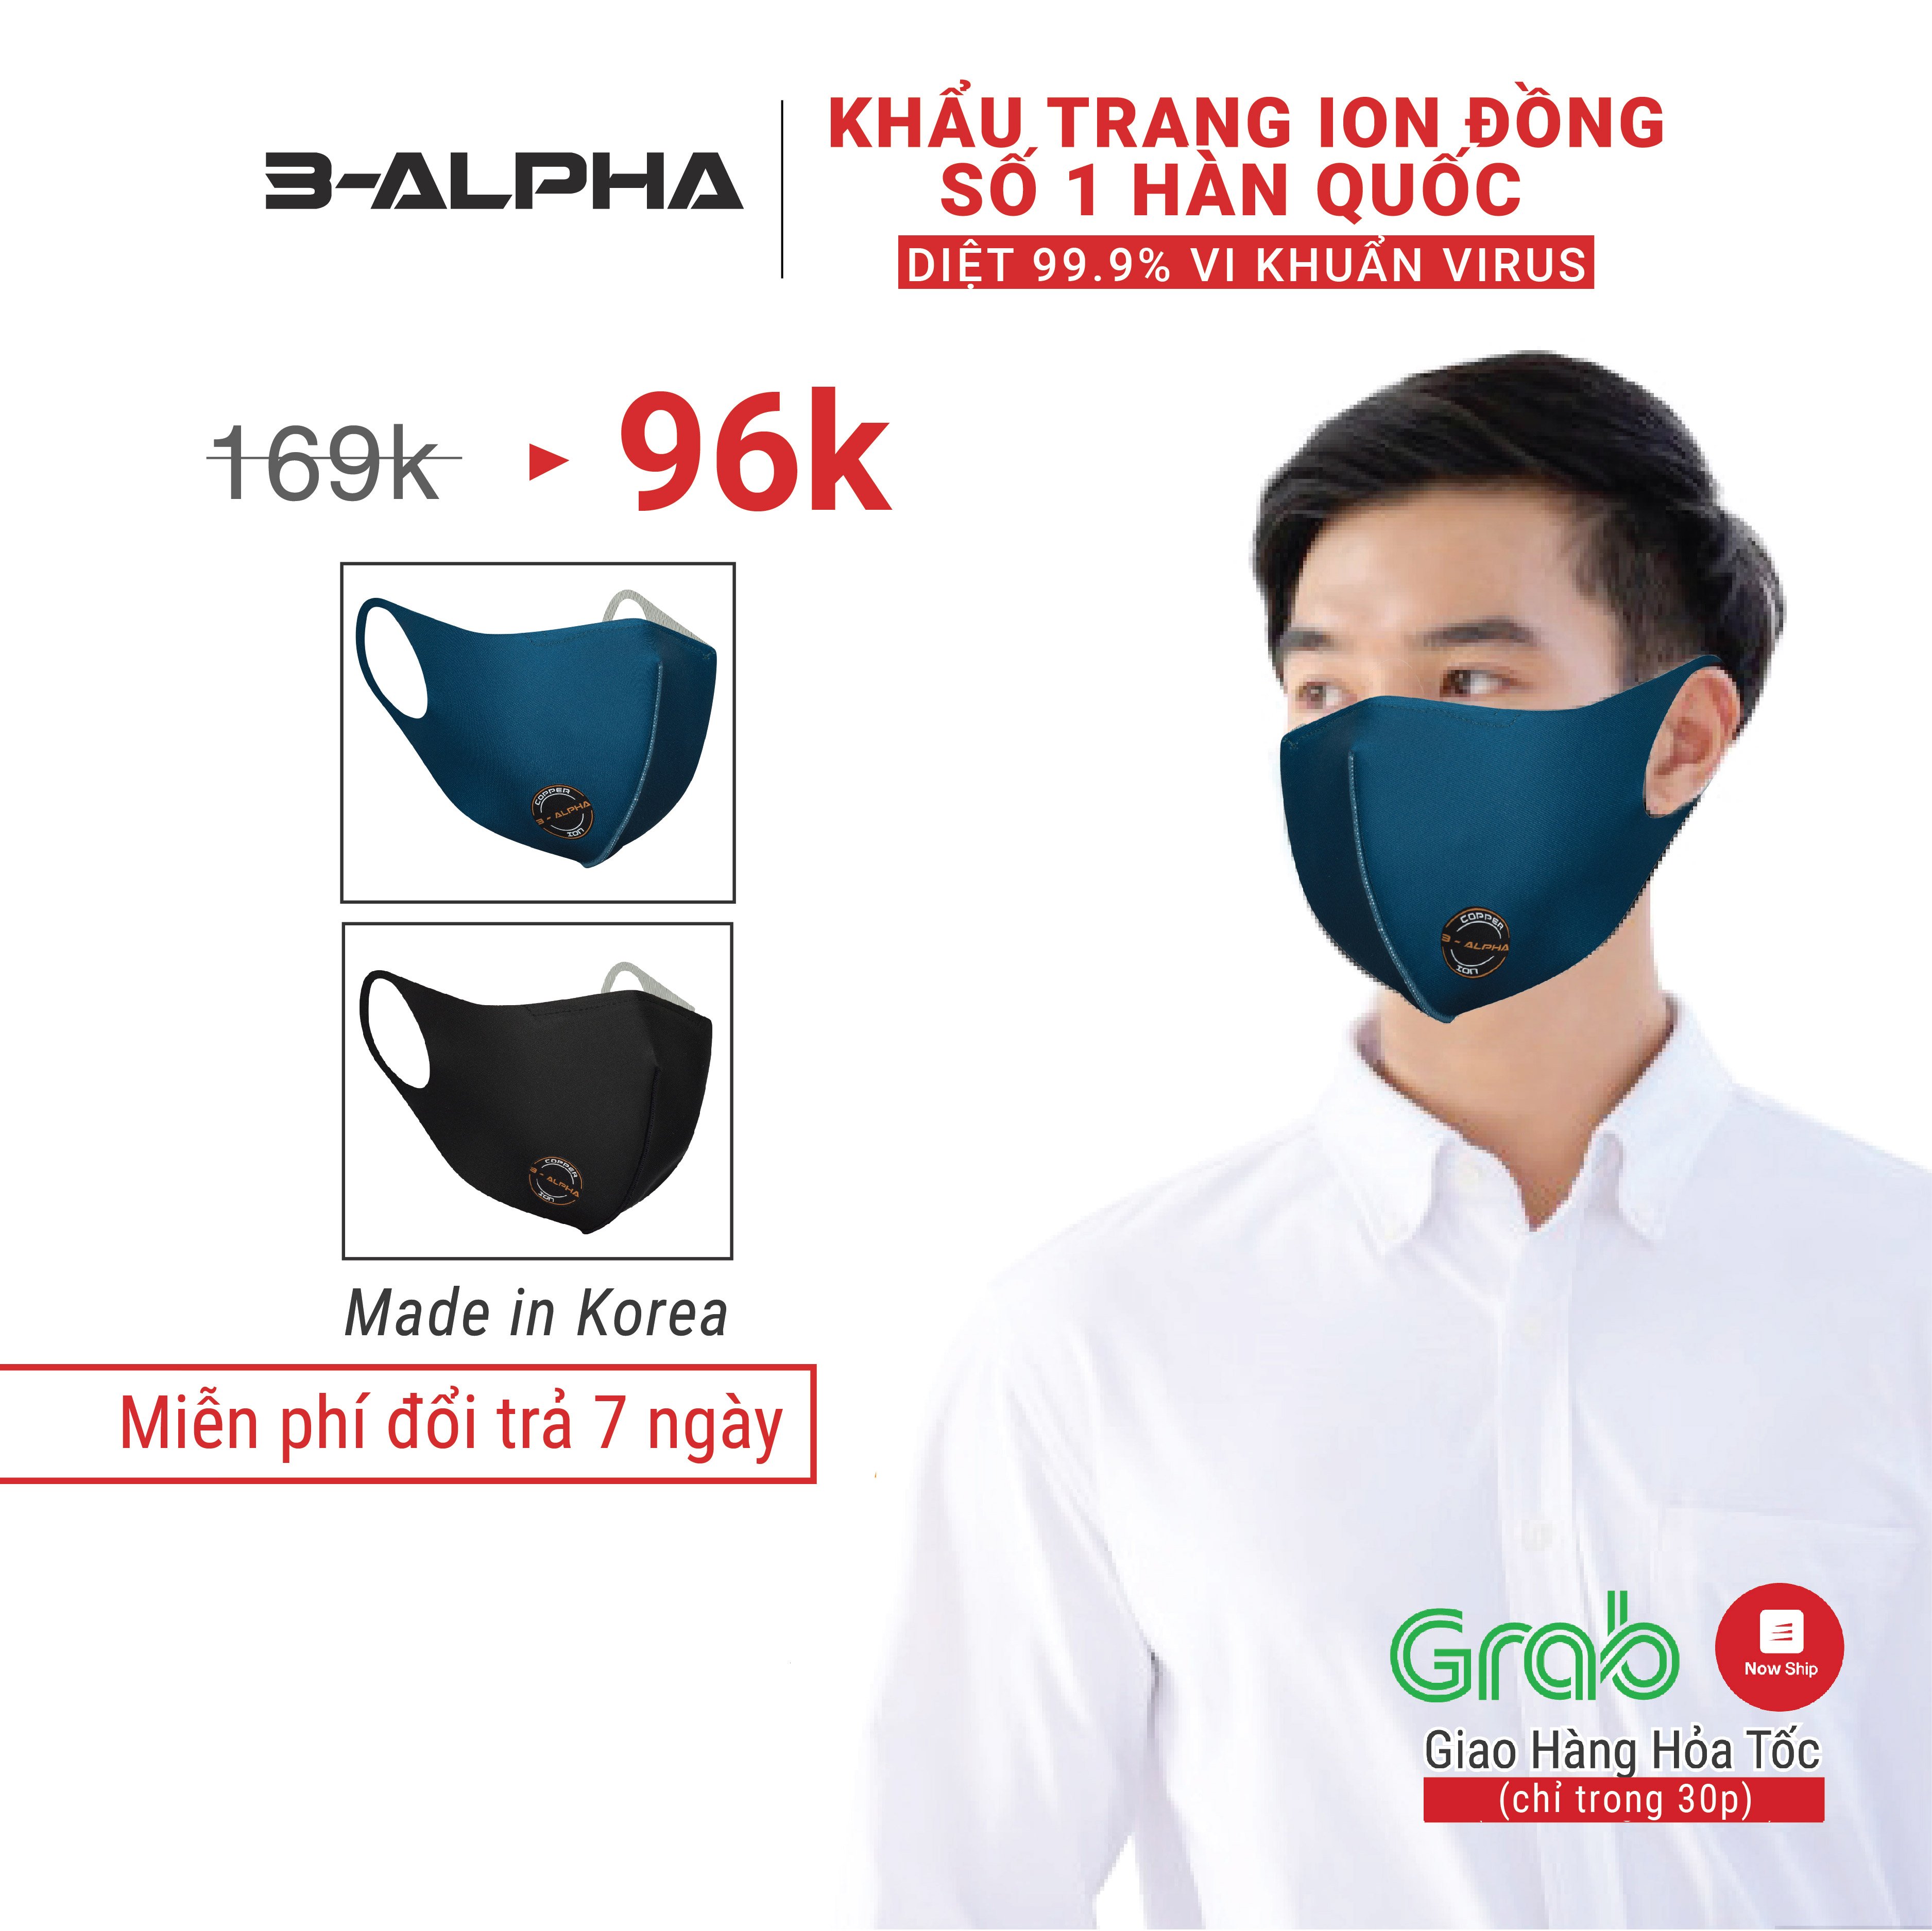 Khẩu trang vải cao cấp Hàn Quốc 3-ALPHA công nghệ ION ĐỒNG, vô hiệu hóa 99.9% vi khuẩn, virus, tái sử dụng 6-9 tháng